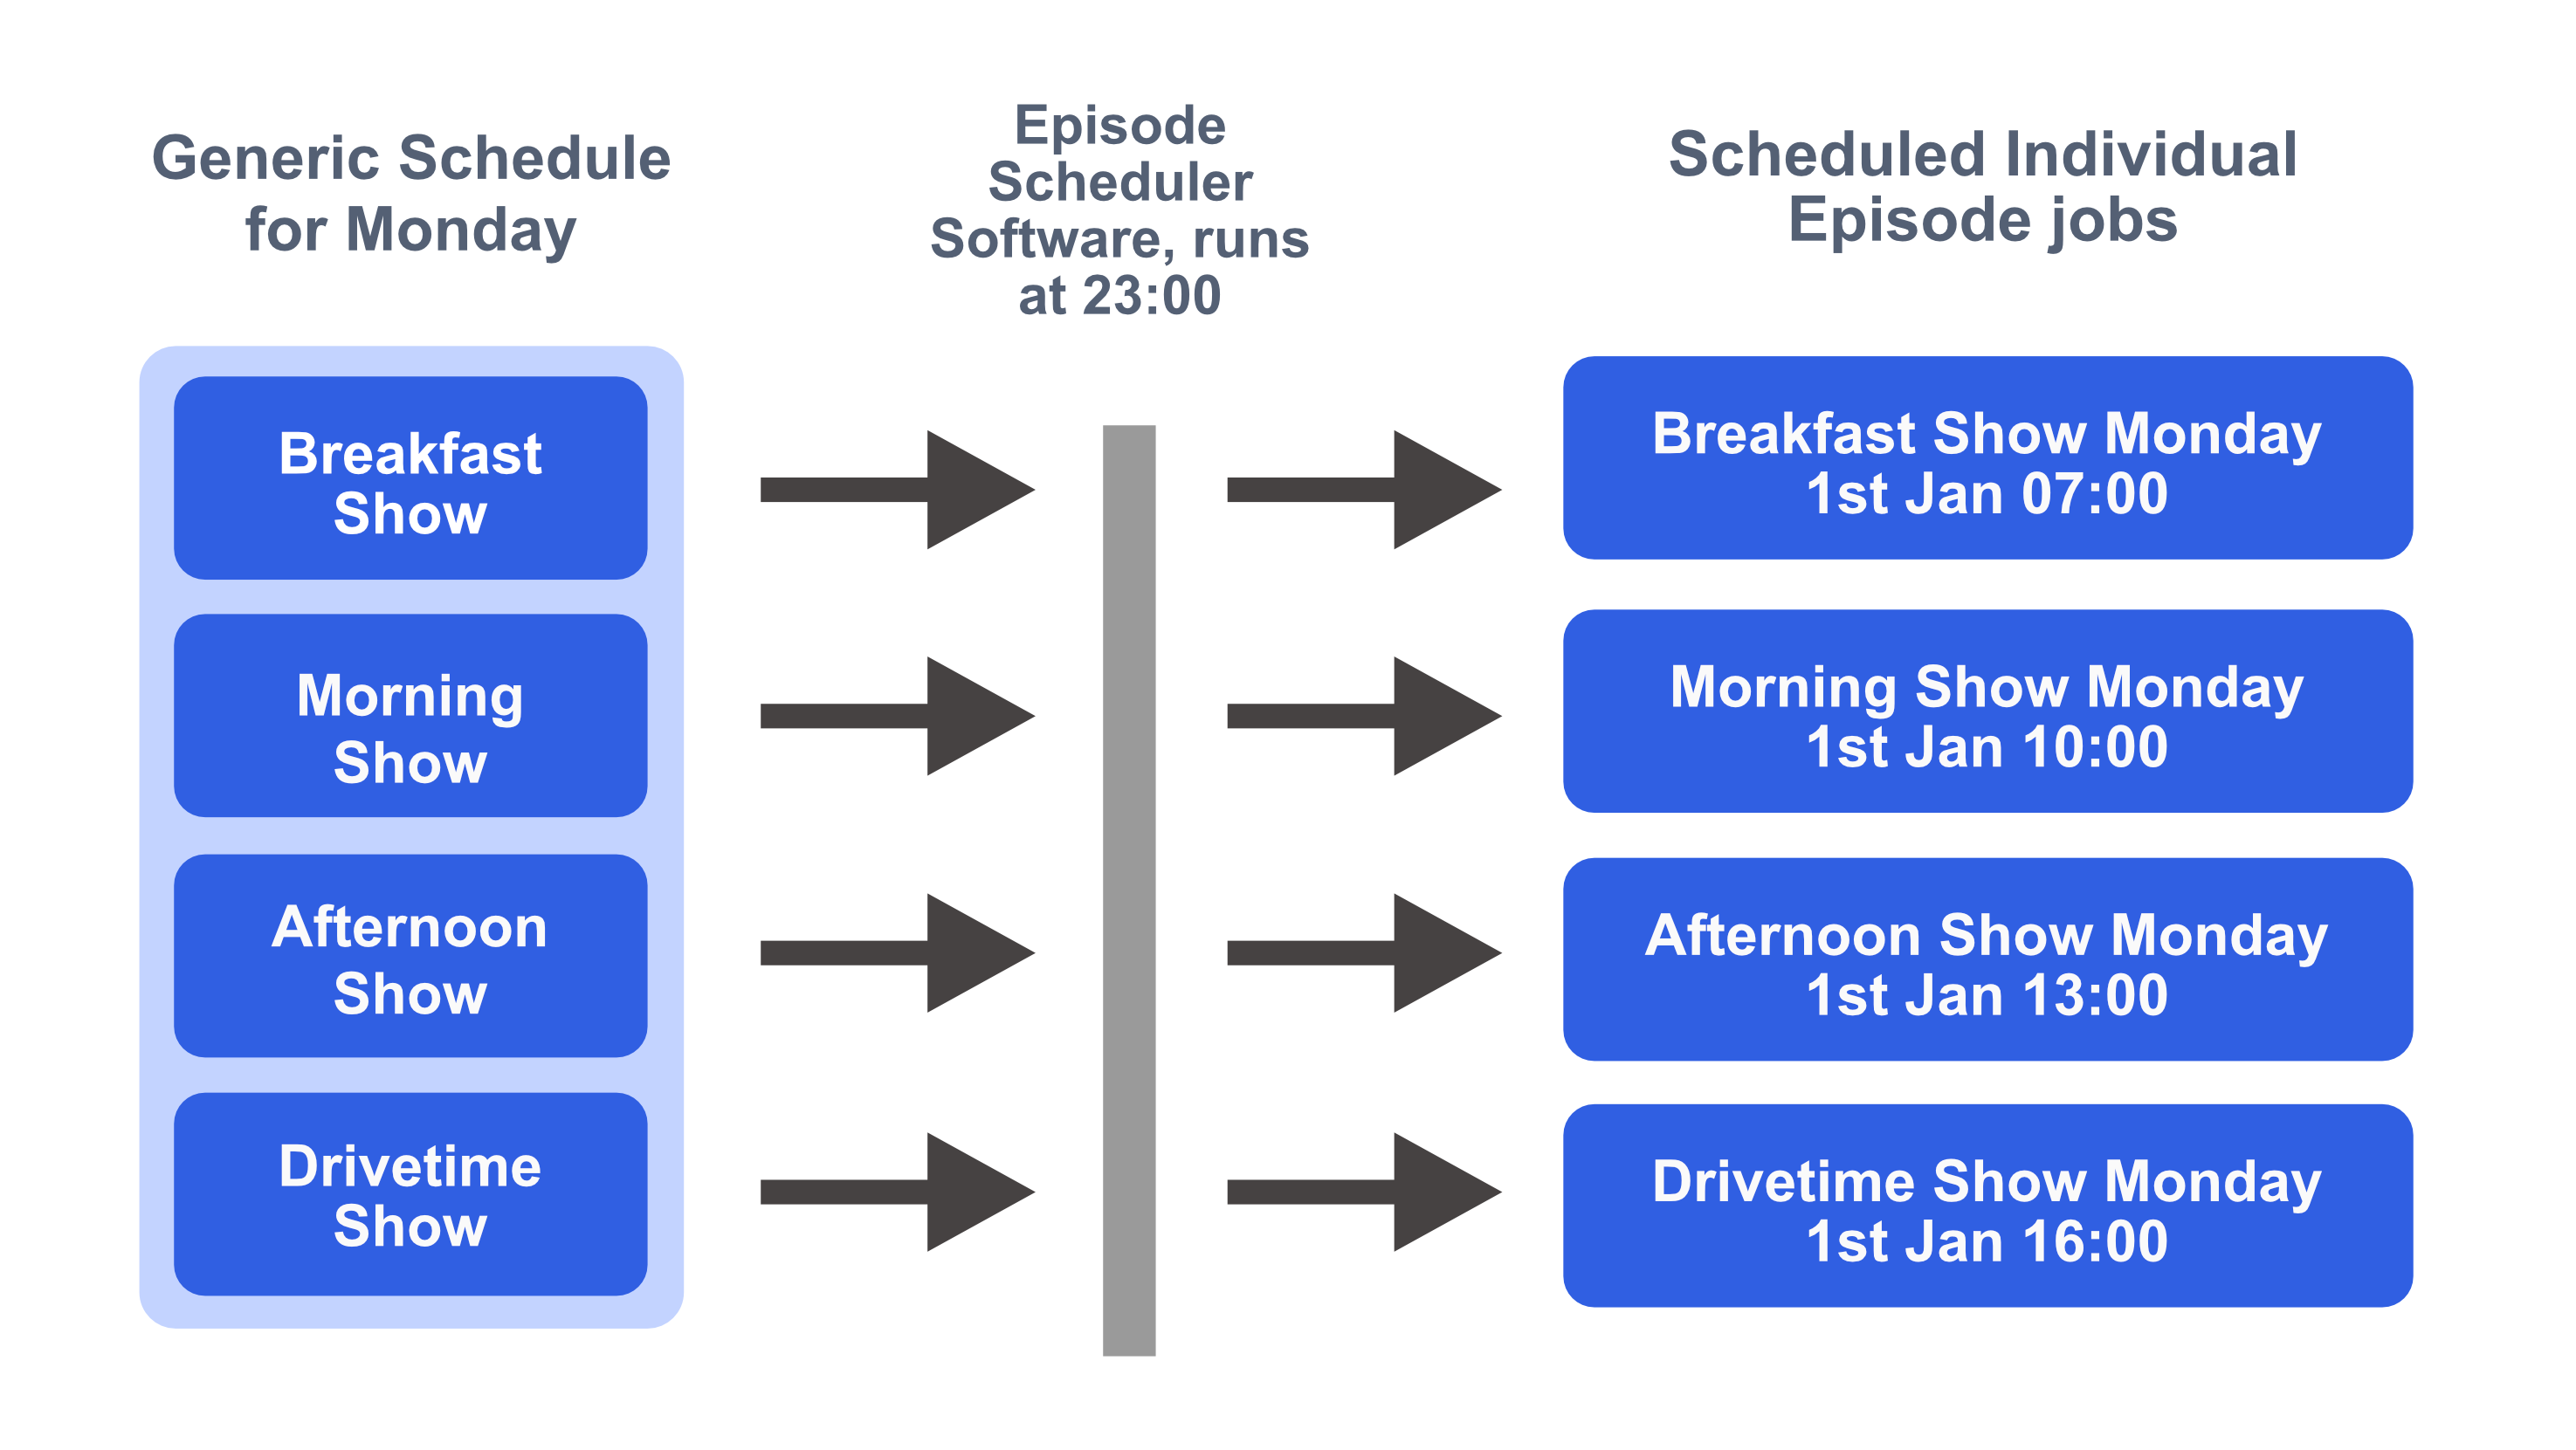 Schedule to Episodes creation